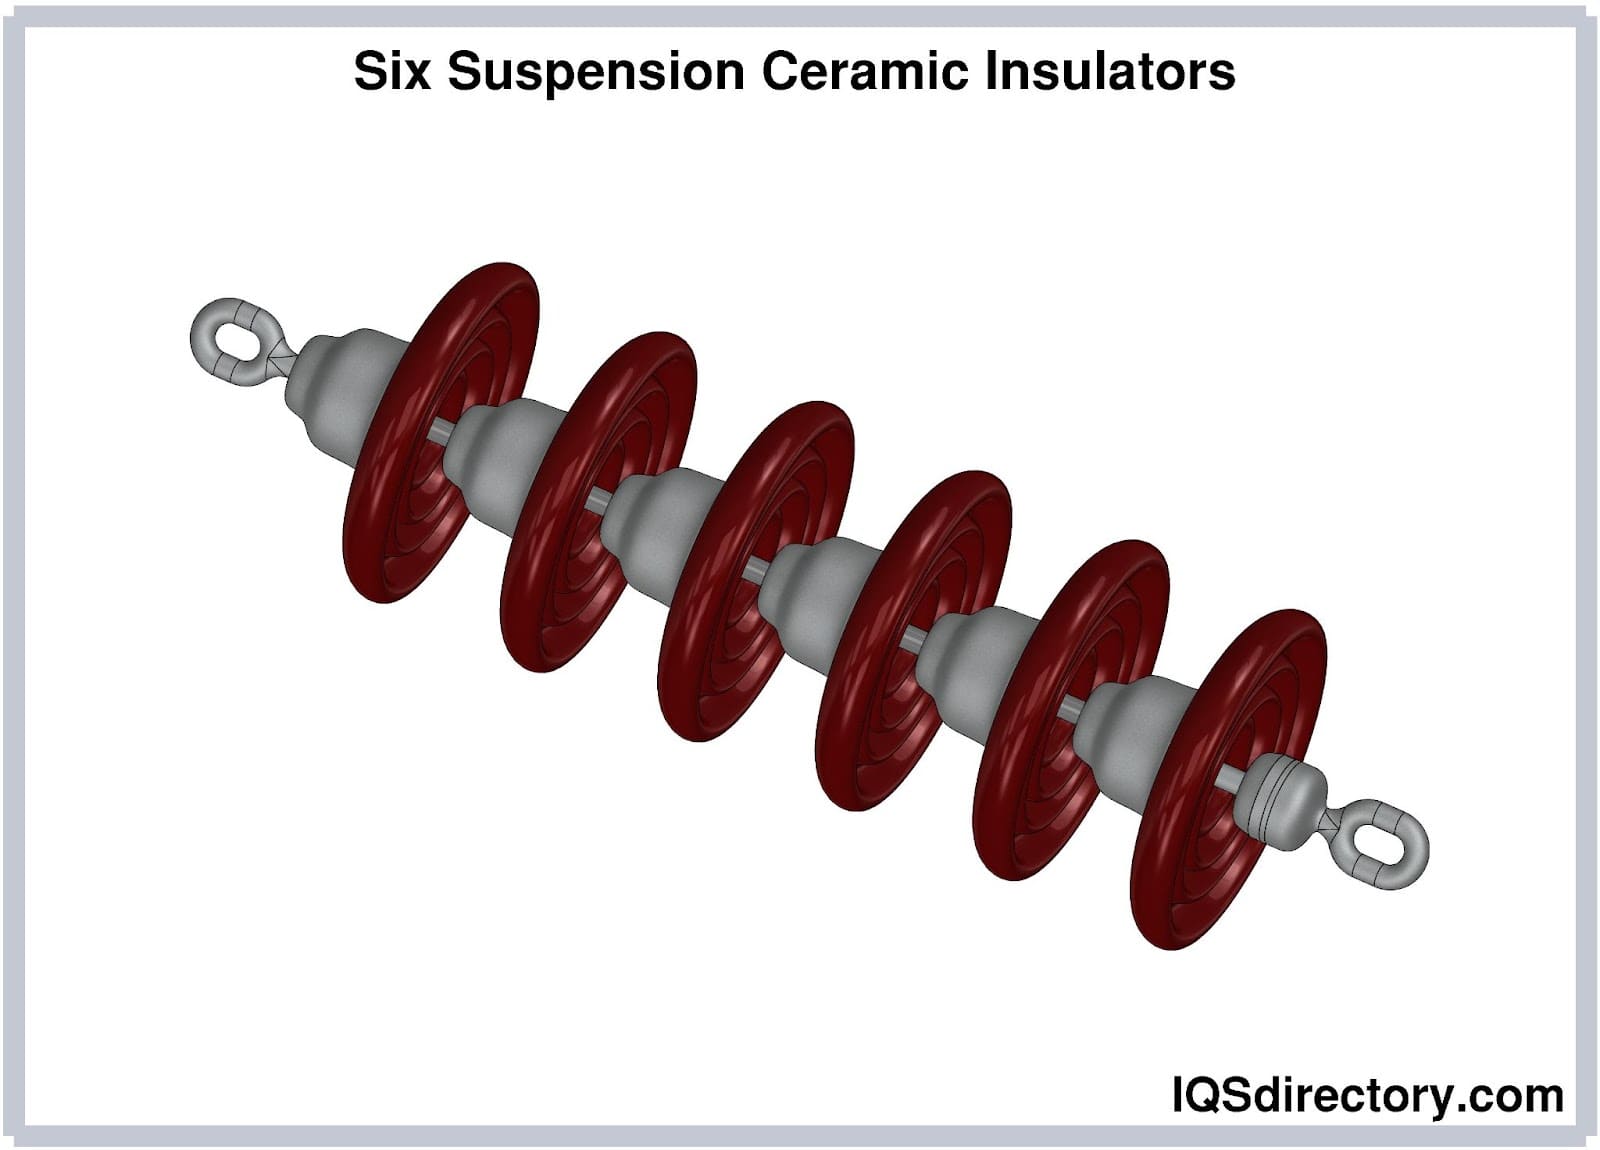 Six Suspension Ceramic Insulators